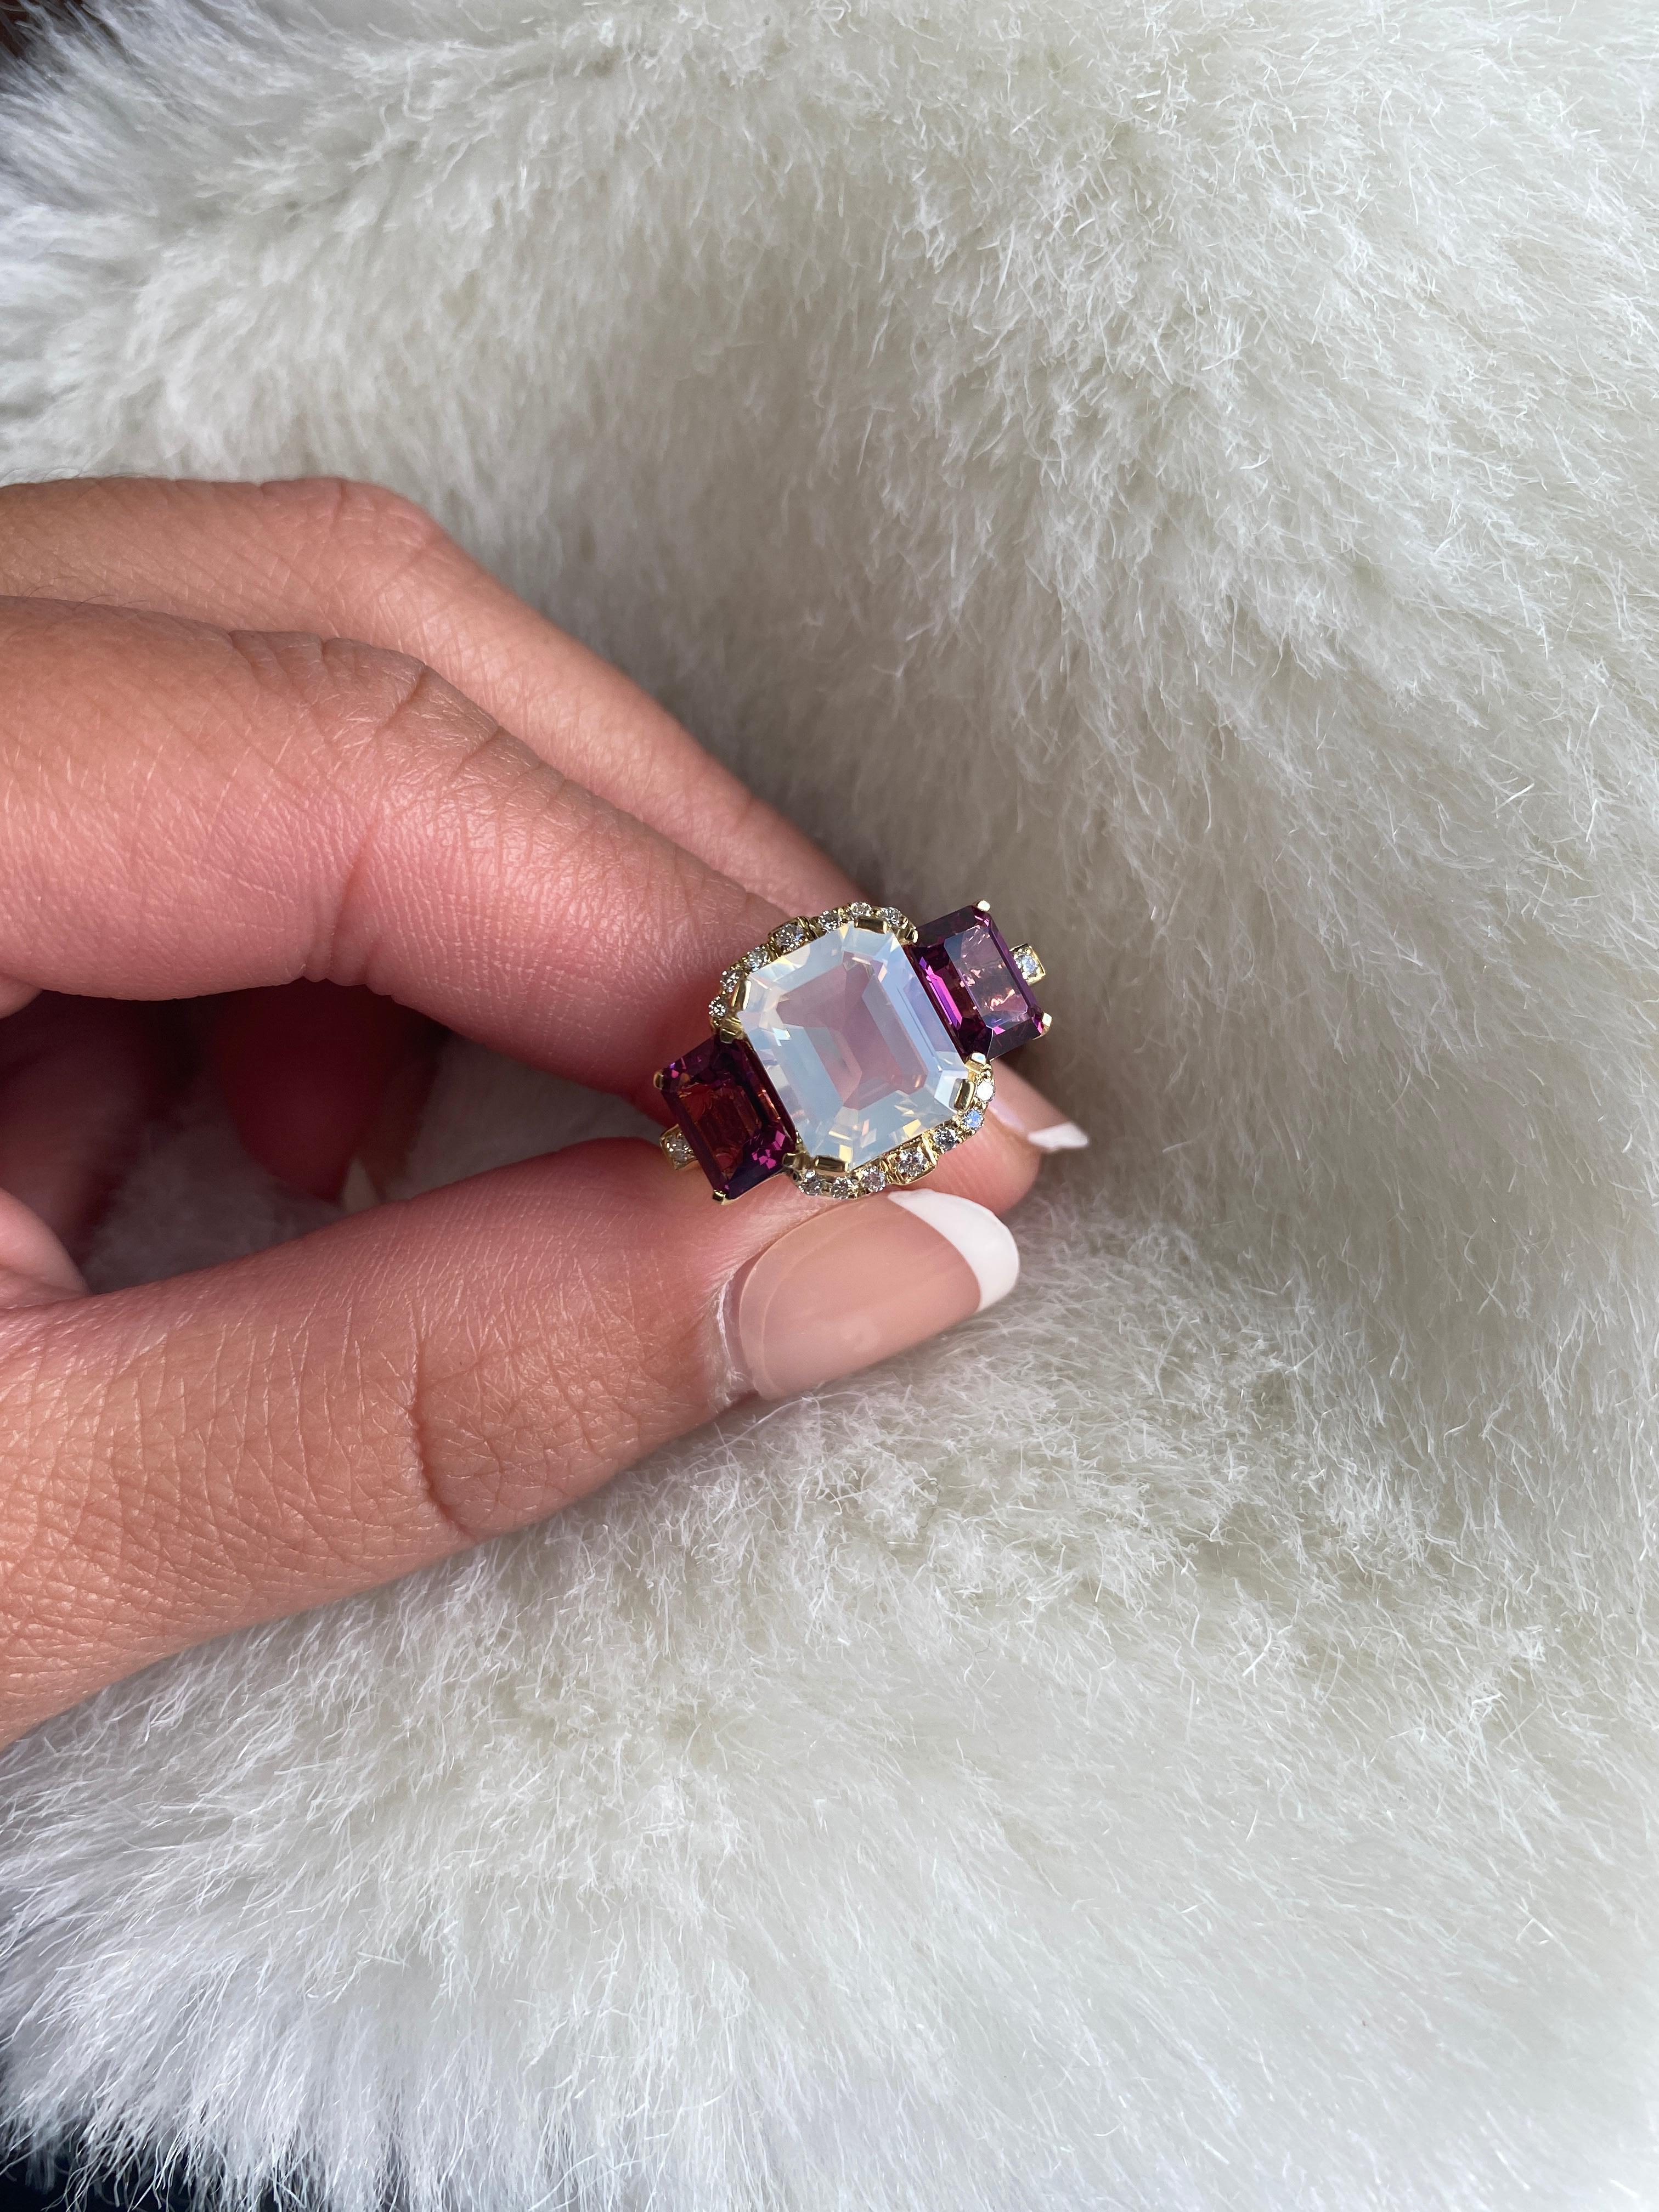 Eine perfekte Kombination aus Mondquarz und Granat ist dieser 3-Stein-Ring mit Smaragdschliff und Diamanten in 18K Gelbgold. Dieses Stück aus unserer beliebten 'Gossip'-Kollektion hat einen Hauch von Schockwert.

* Steingröße: 10 x 8 - 7 x 5 mm
*